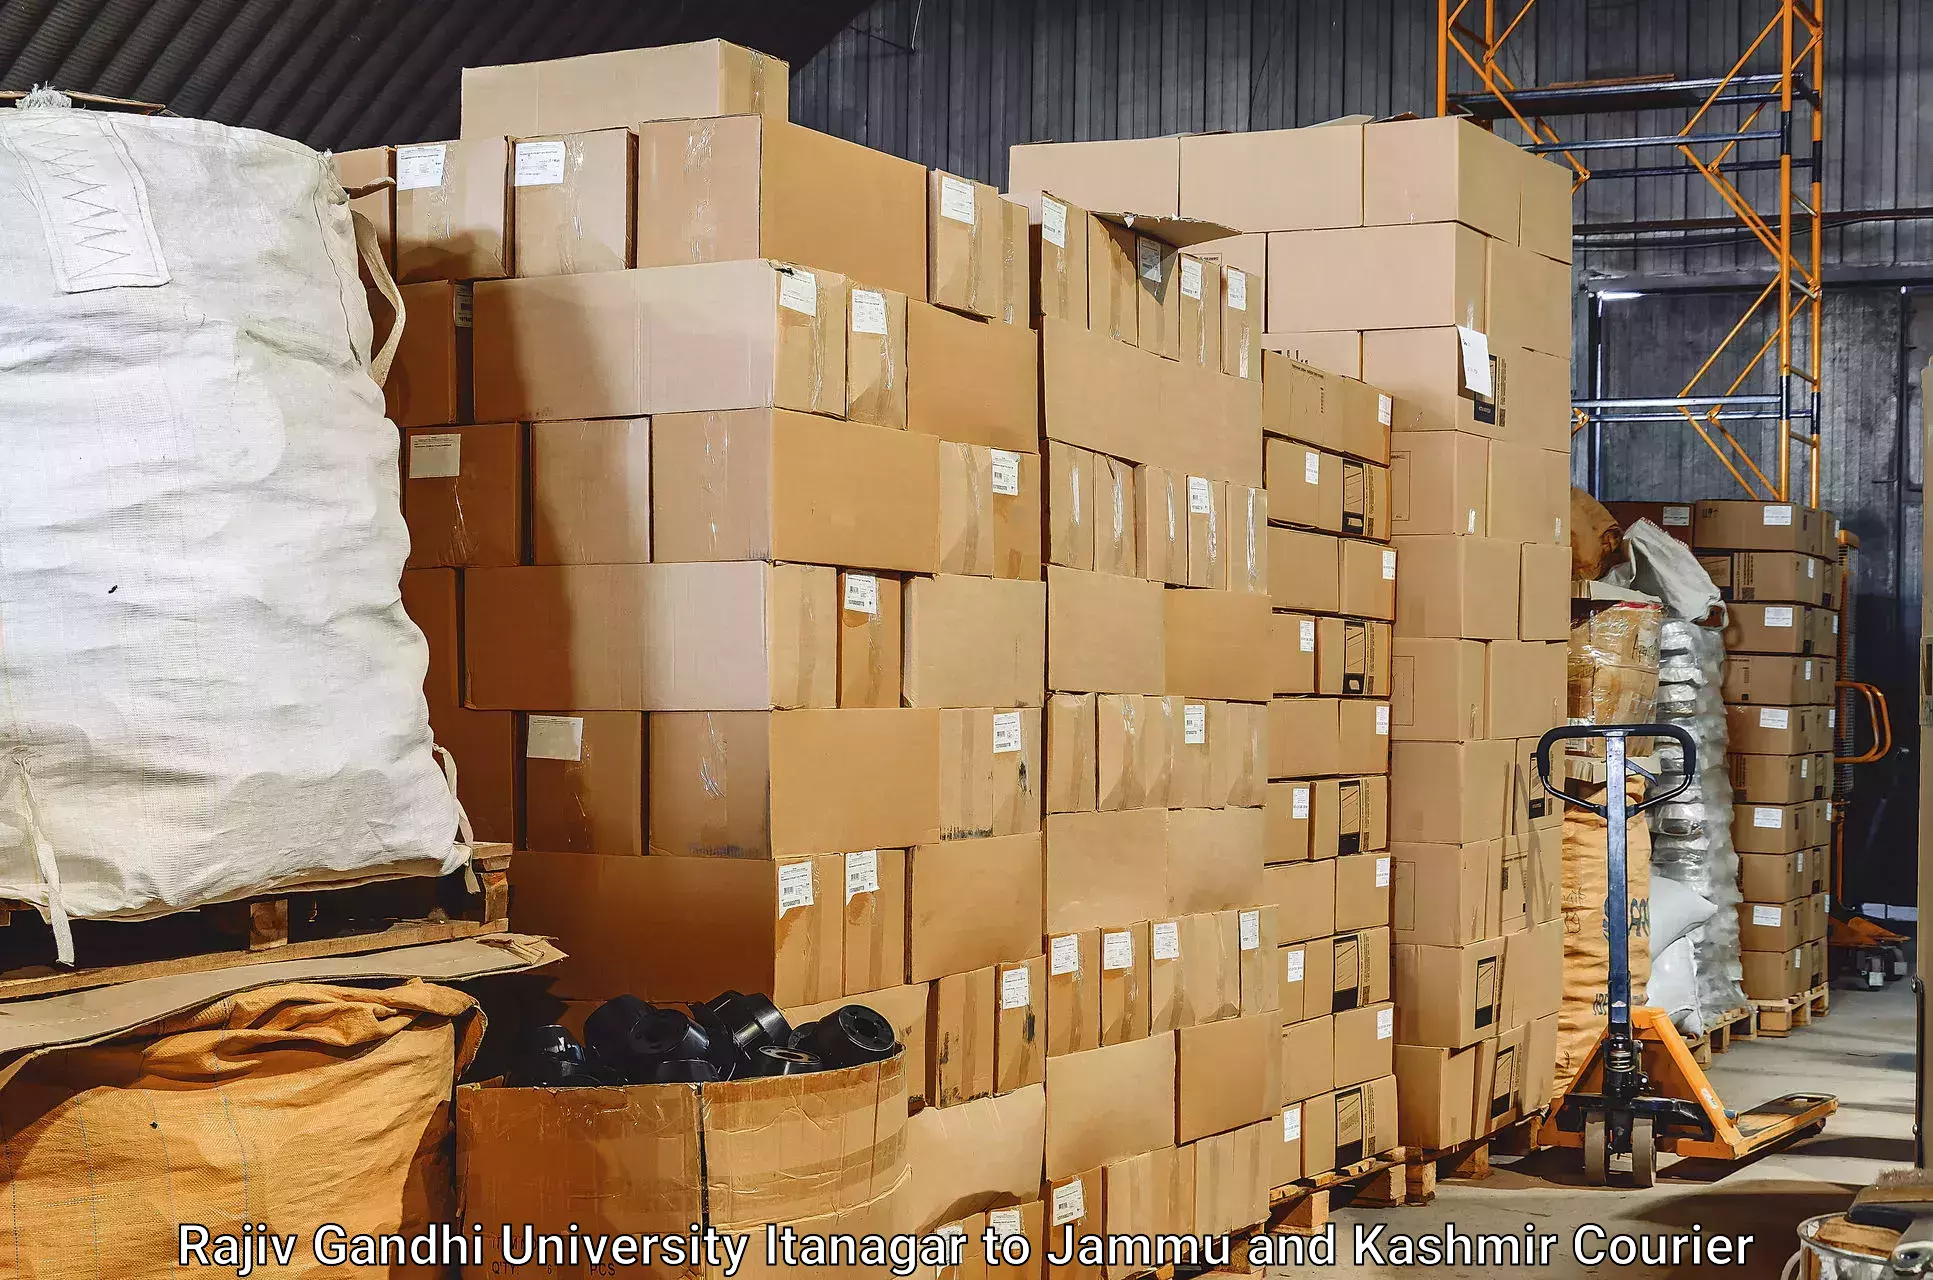 Baggage delivery technology Rajiv Gandhi University Itanagar to Bandipur